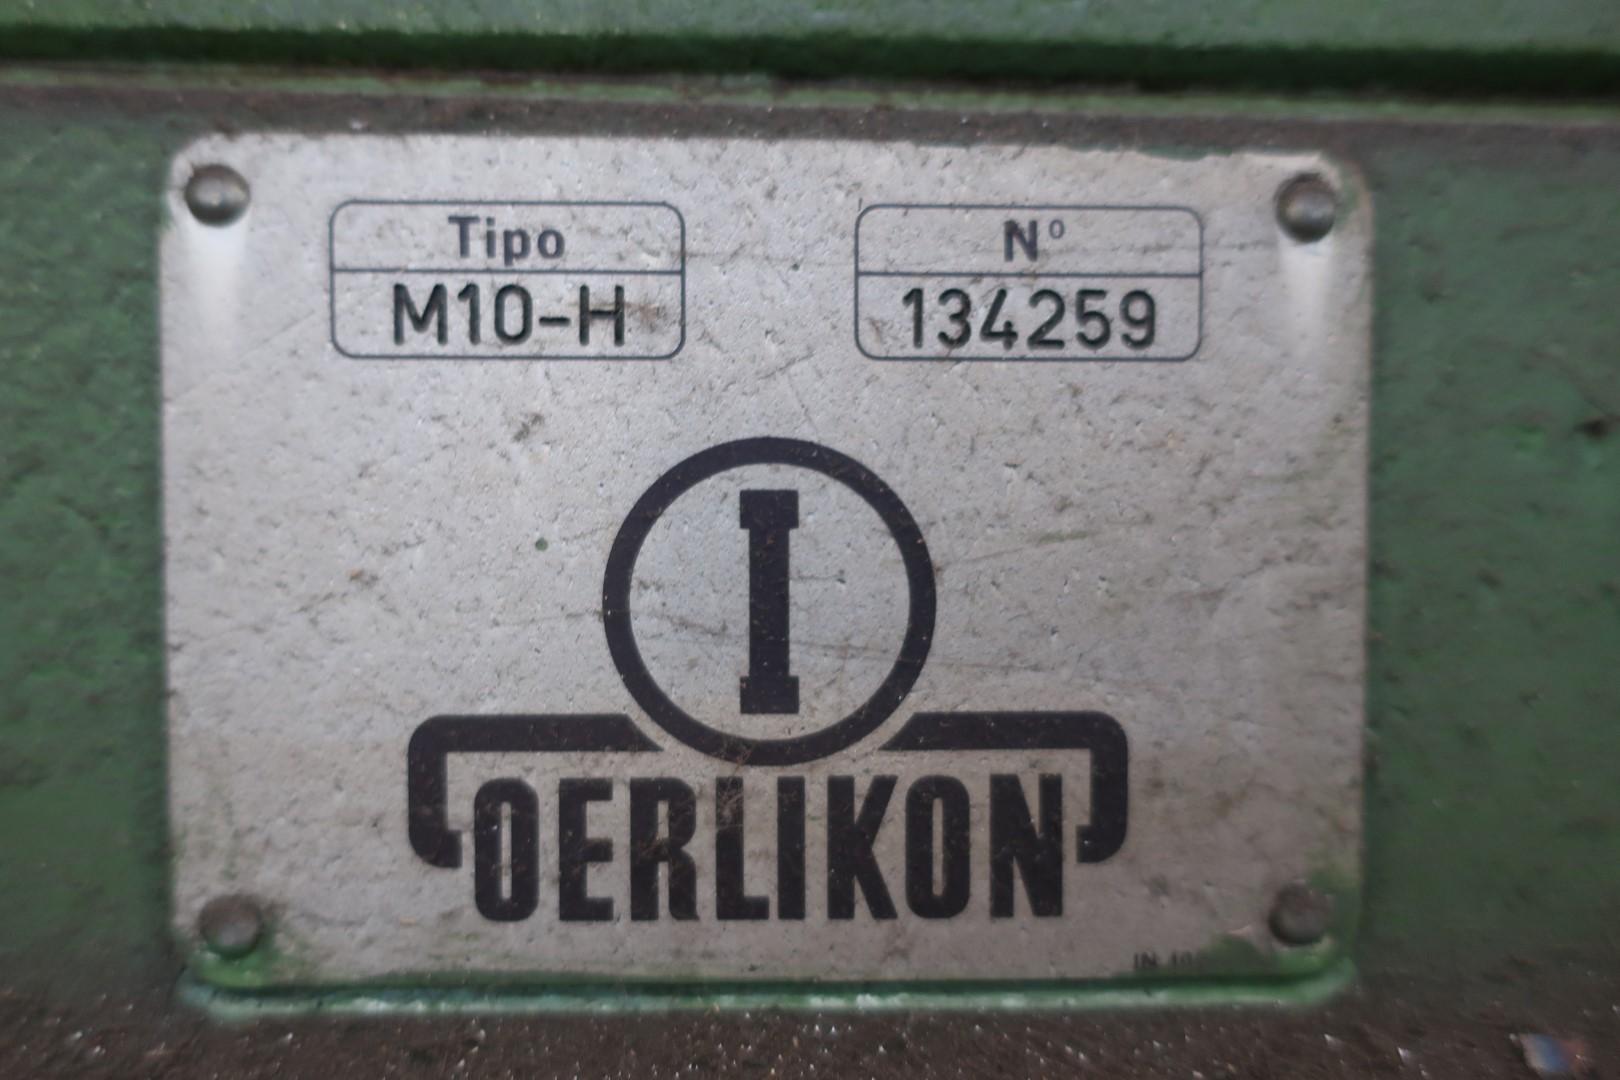 Milling/Oerlikon - M10-H